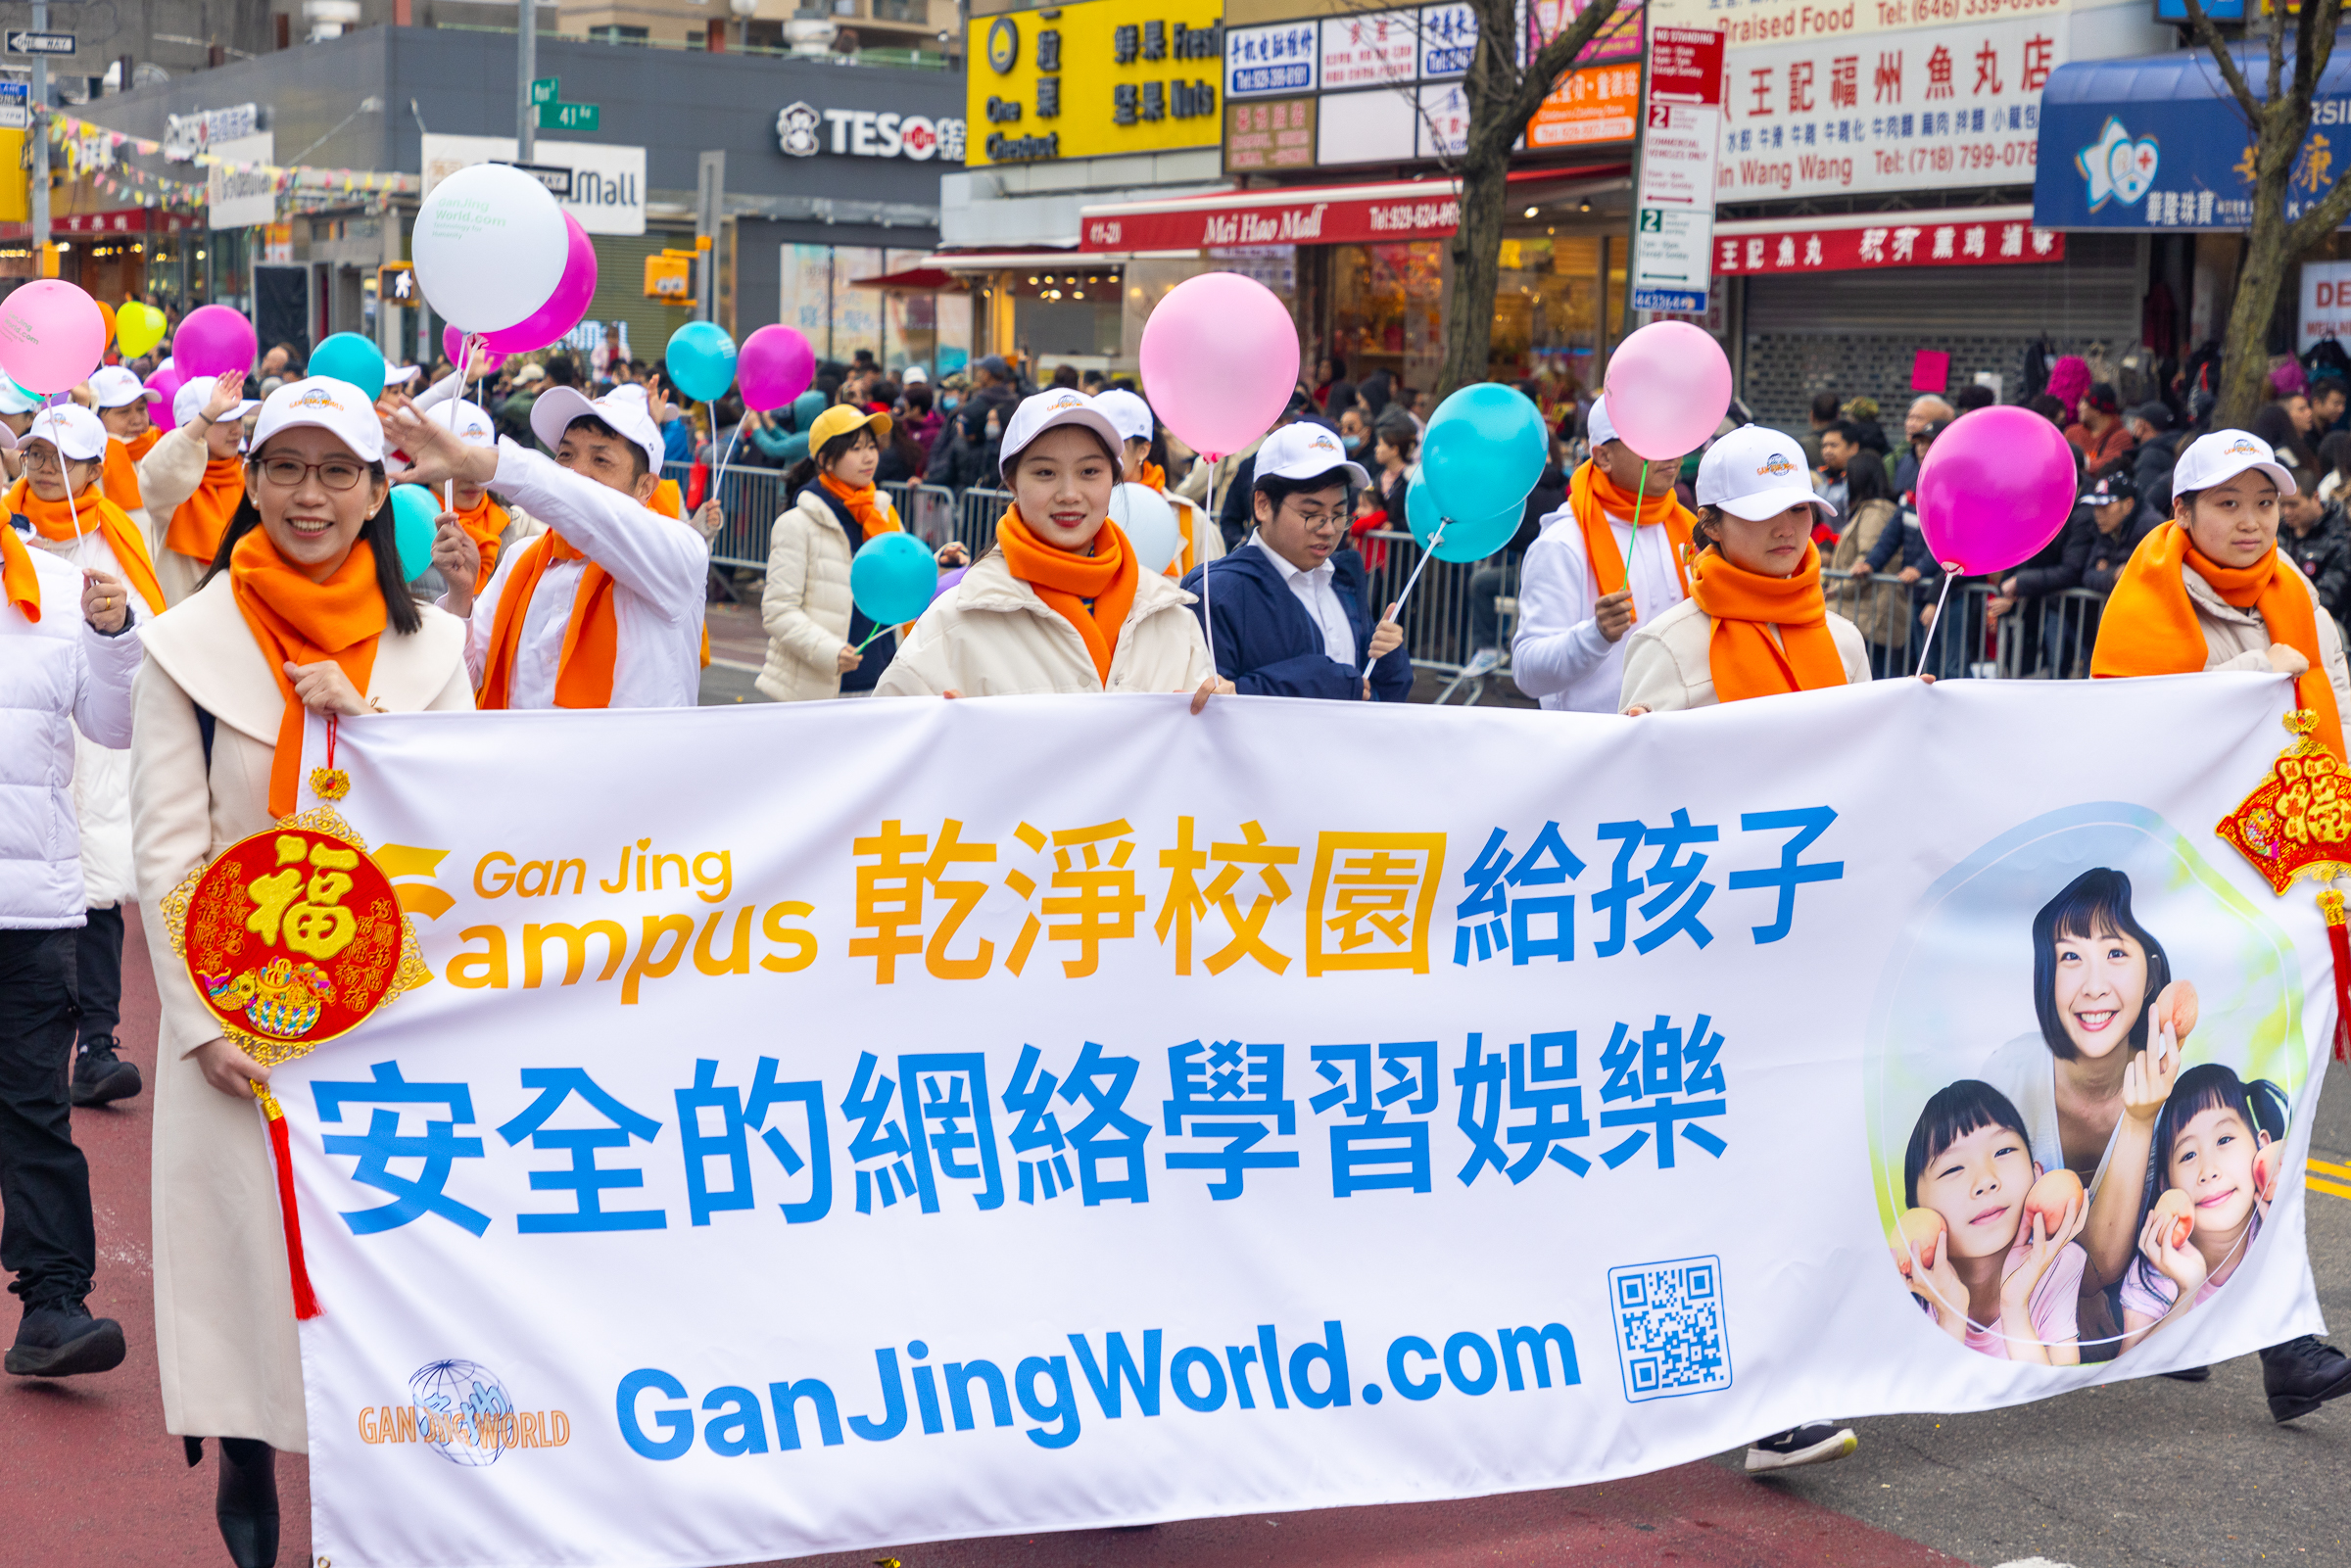 Đoàn Gan Jing Campus của Gan Jing World đã tham gia Lễ diễn hành Tết Nguyên đán ở Flushing, New York, để chúc mừng năm mới. (Ảnh: Mark Zou/Epoch Times)